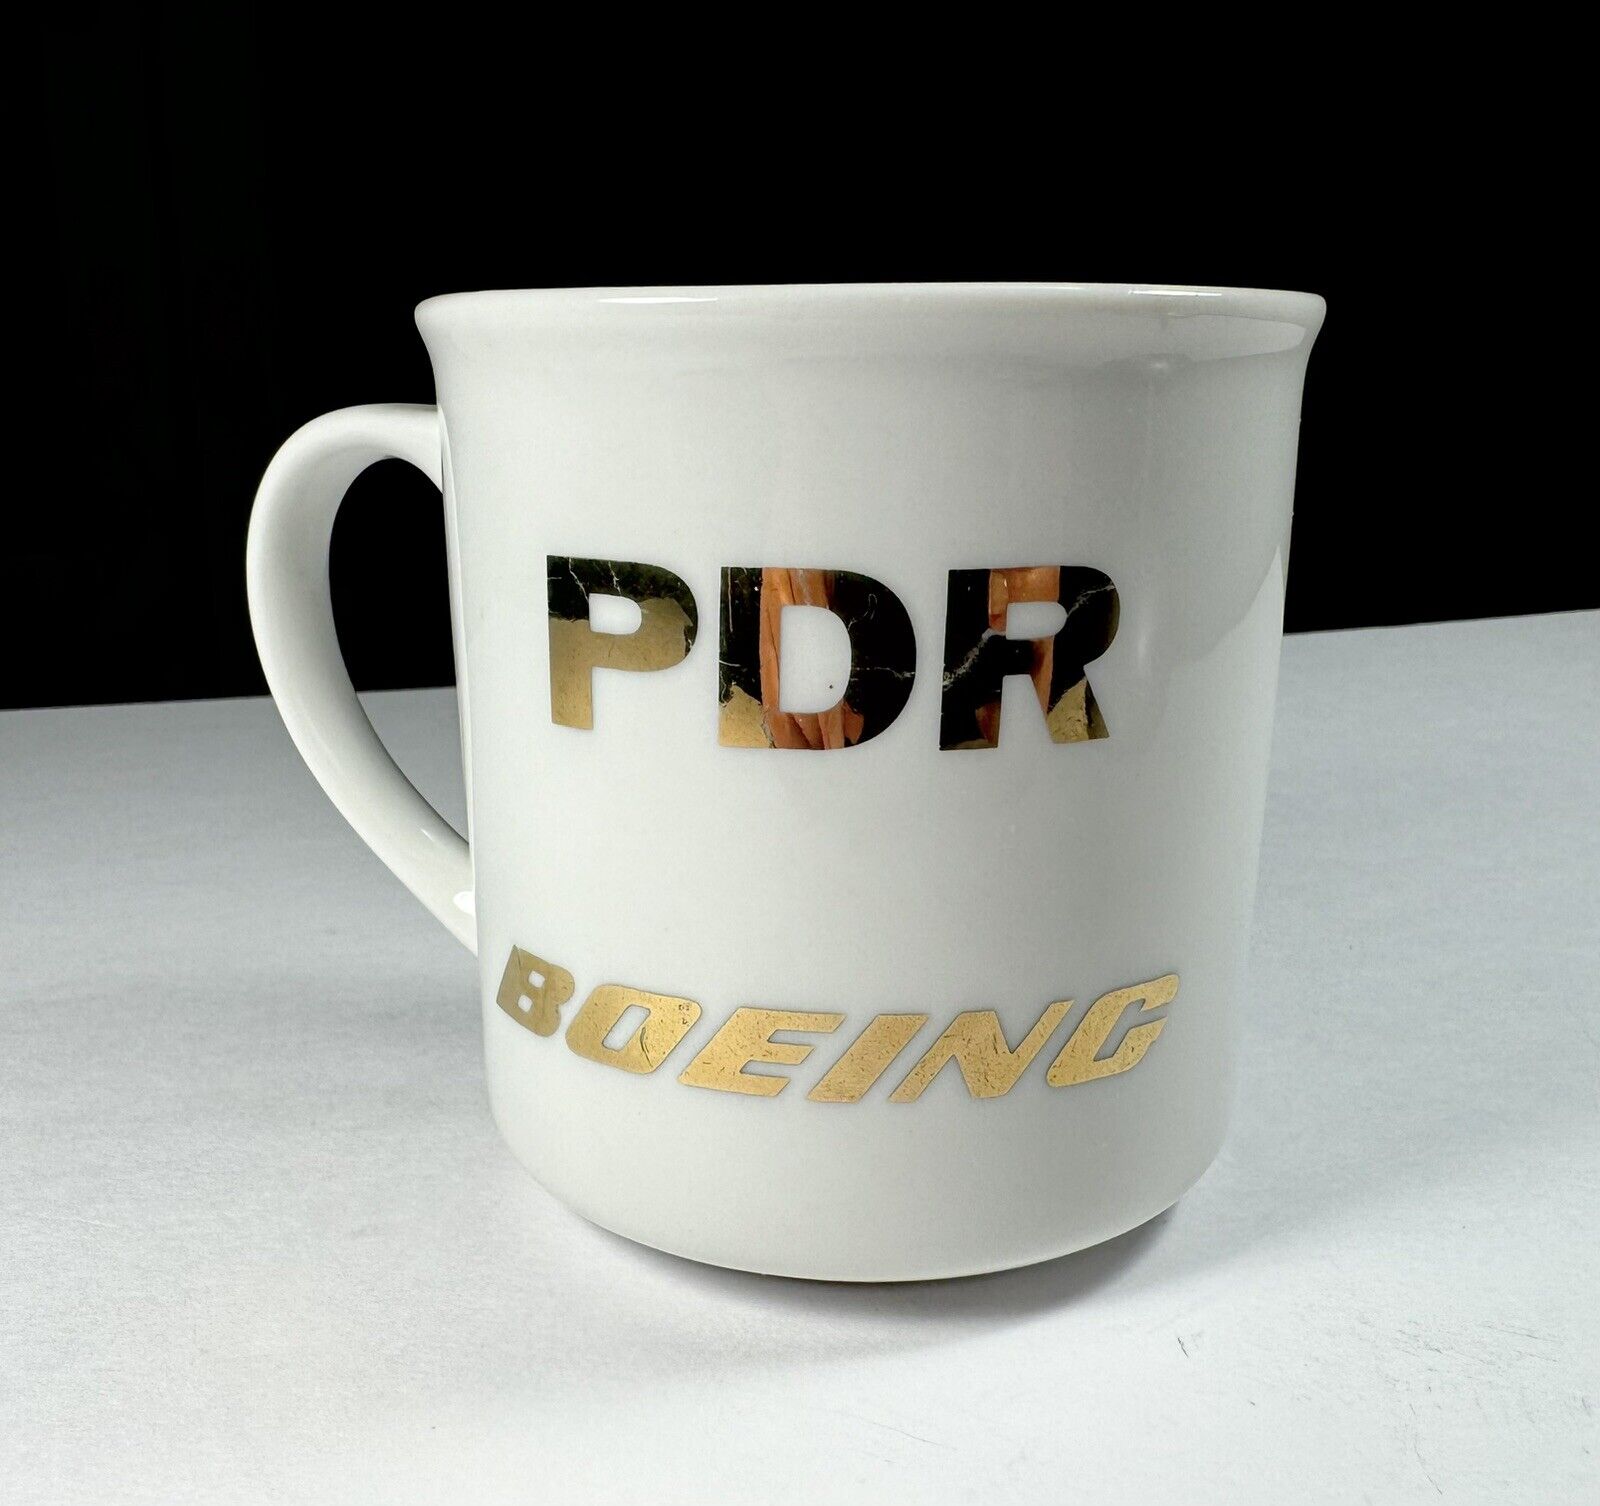 Vintage Boeing PDR Freedom Ceramic Mug W/ Gold Lettering / Design Exc Vtg Cd